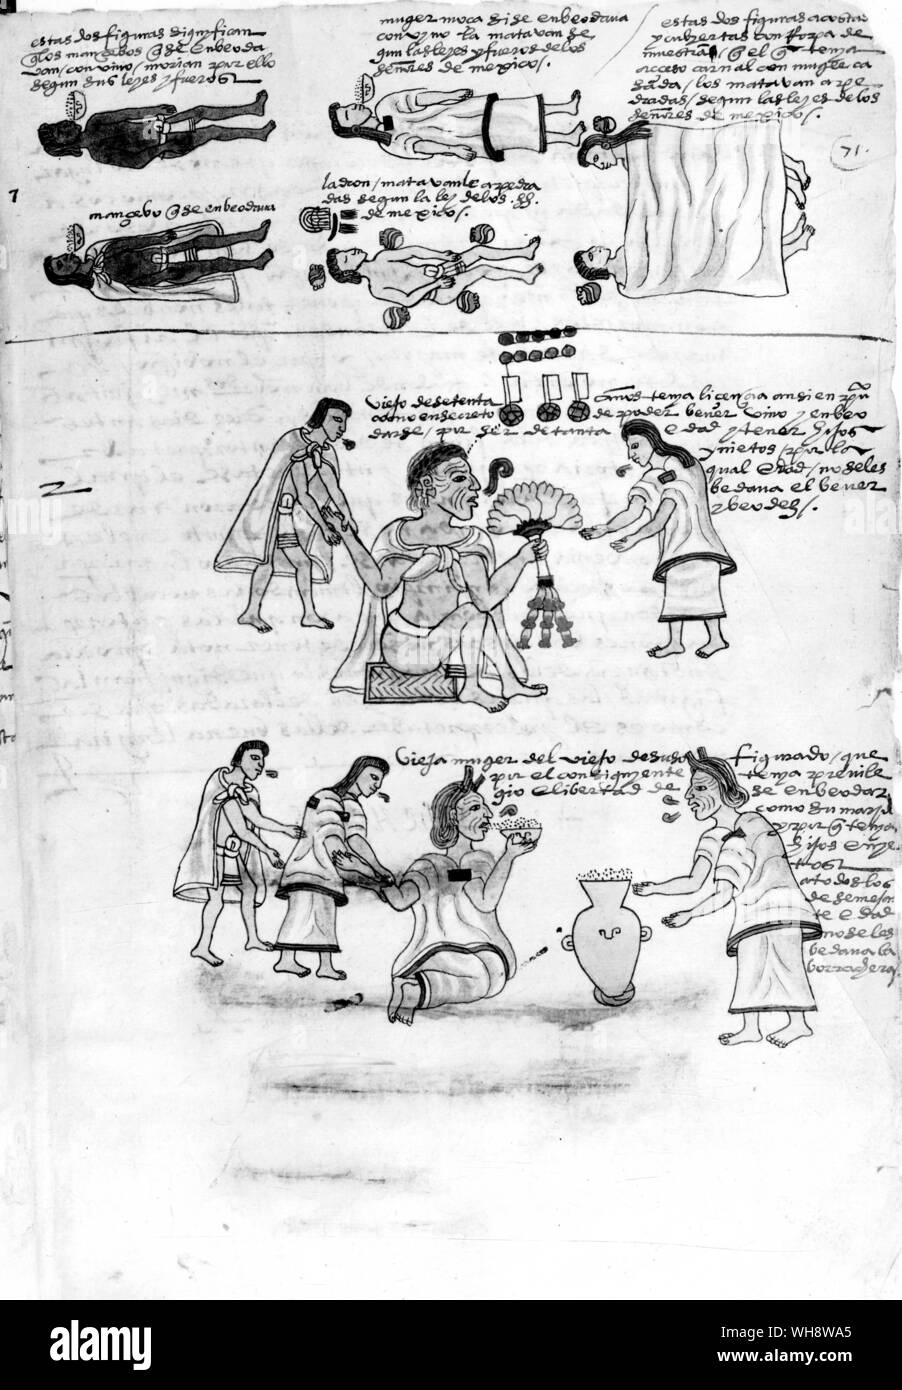 Les peines ont été sévères dans la société aztèque. Les coupables d'ivrognerie, le vol et l'adultère ont été mis à mort par lapidation (comme indiqué dans la partie supérieure), mais les personnes âgées ont été autorisés à s'enivrer (comme indiqué dans la partie inférieure). Codex Banque D'Images